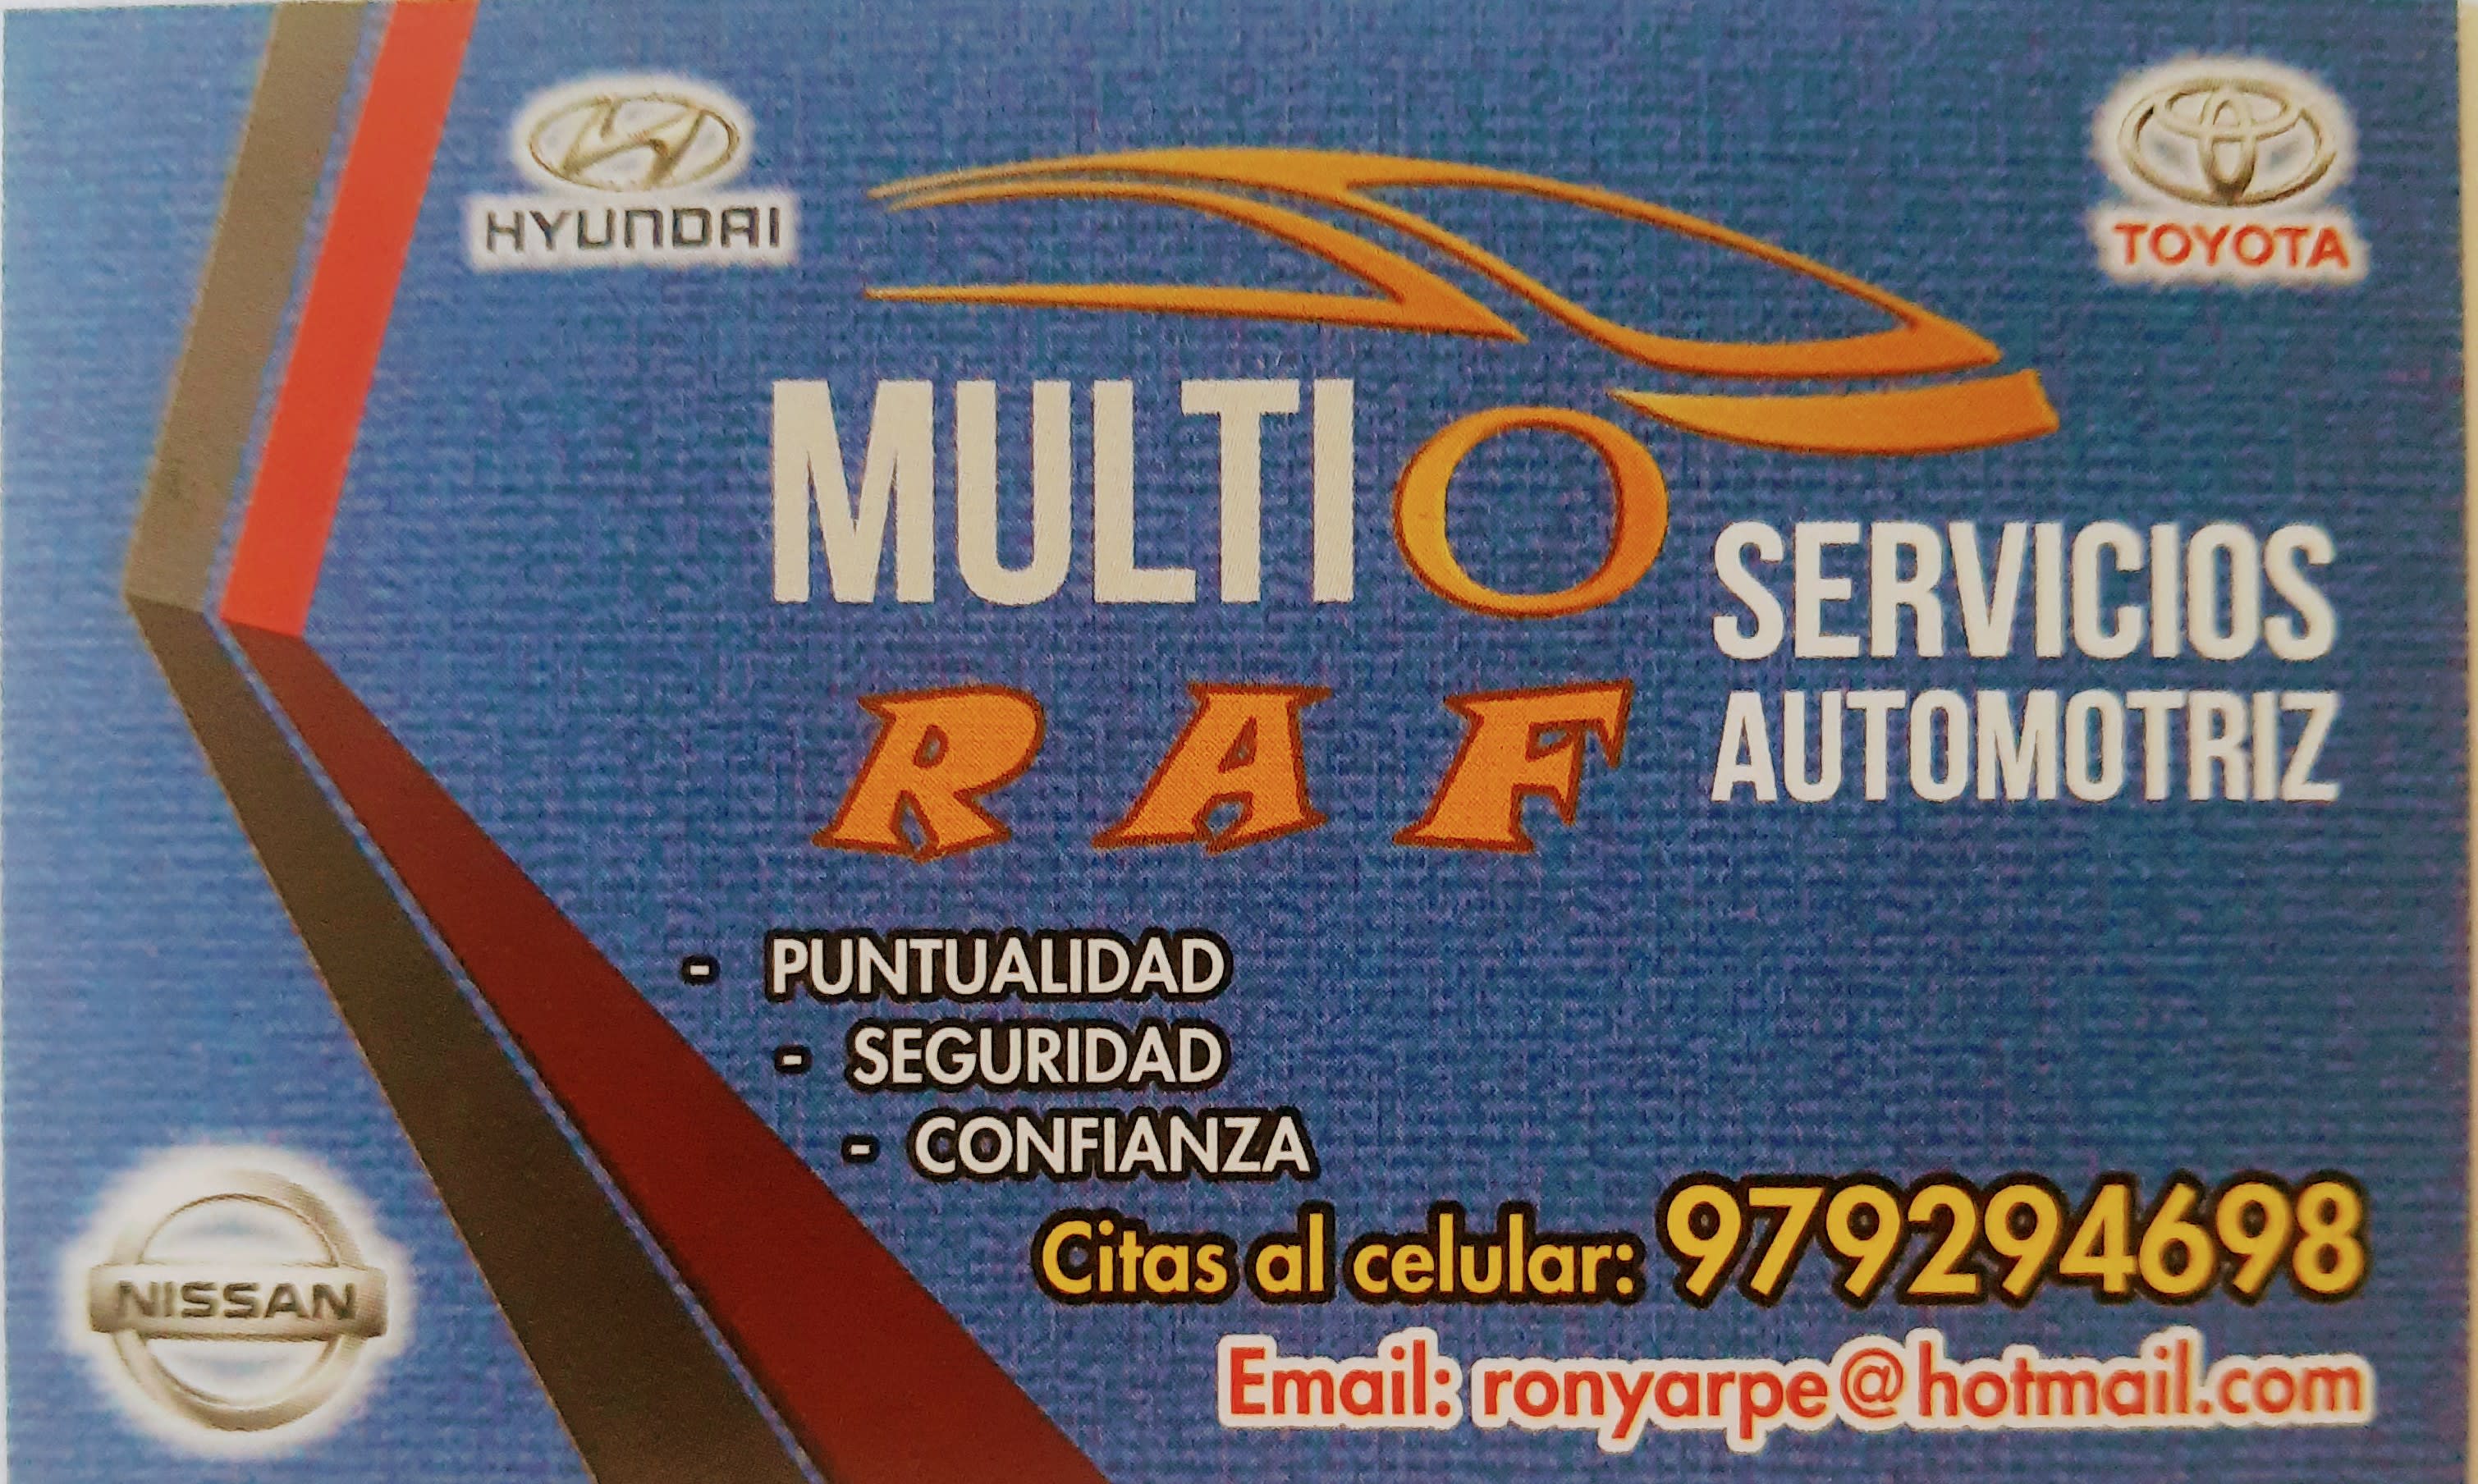 Multiservicios Automotriz Raf Sac